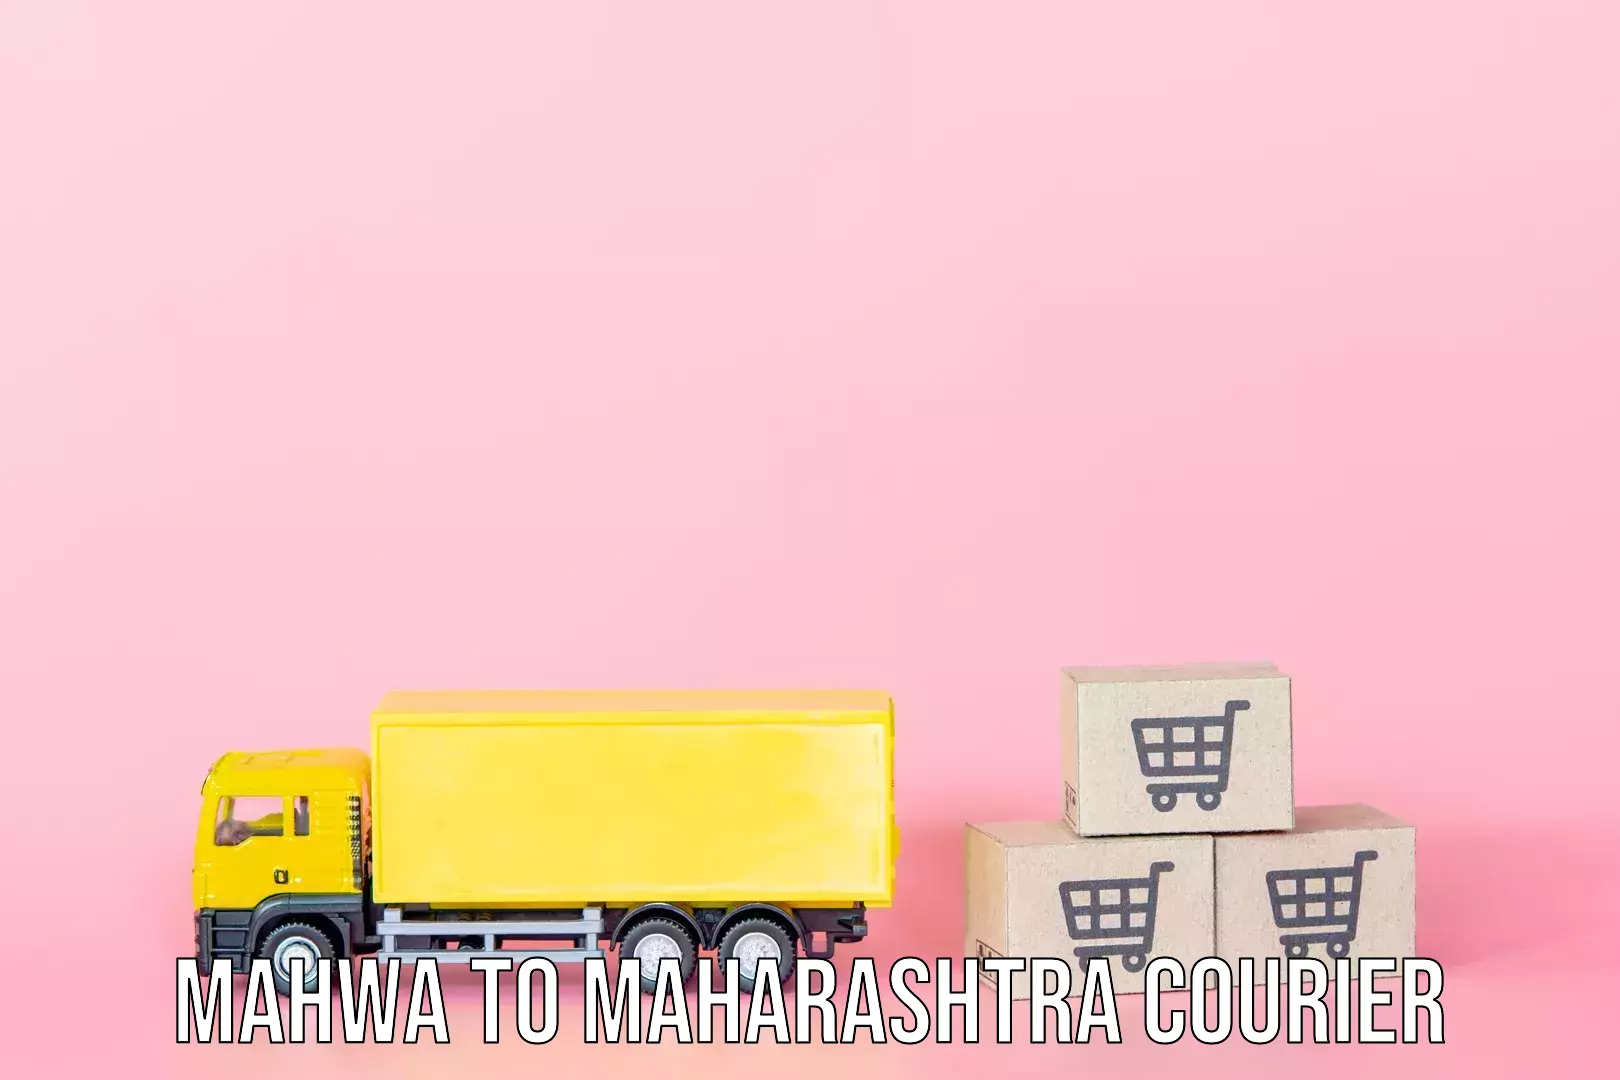 Luggage transport service Mahwa to Maharashtra